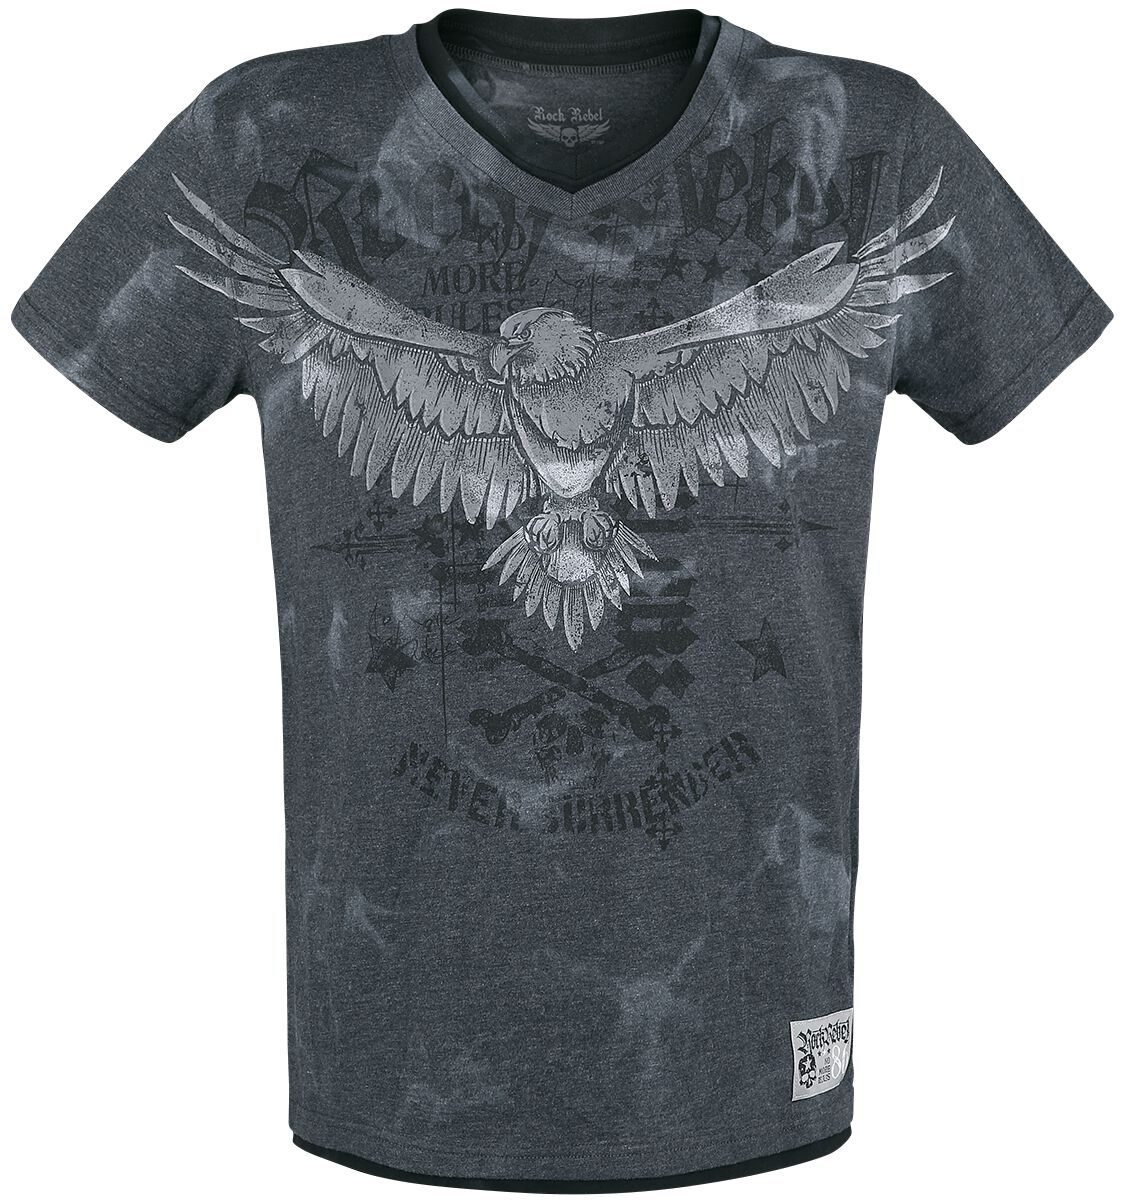 Rock Rebel by EMP - Rock T-Shirt - T-Shirt mit Print und V-Ausschnitt - S bis XXL - für Männer - Größe XL - grau